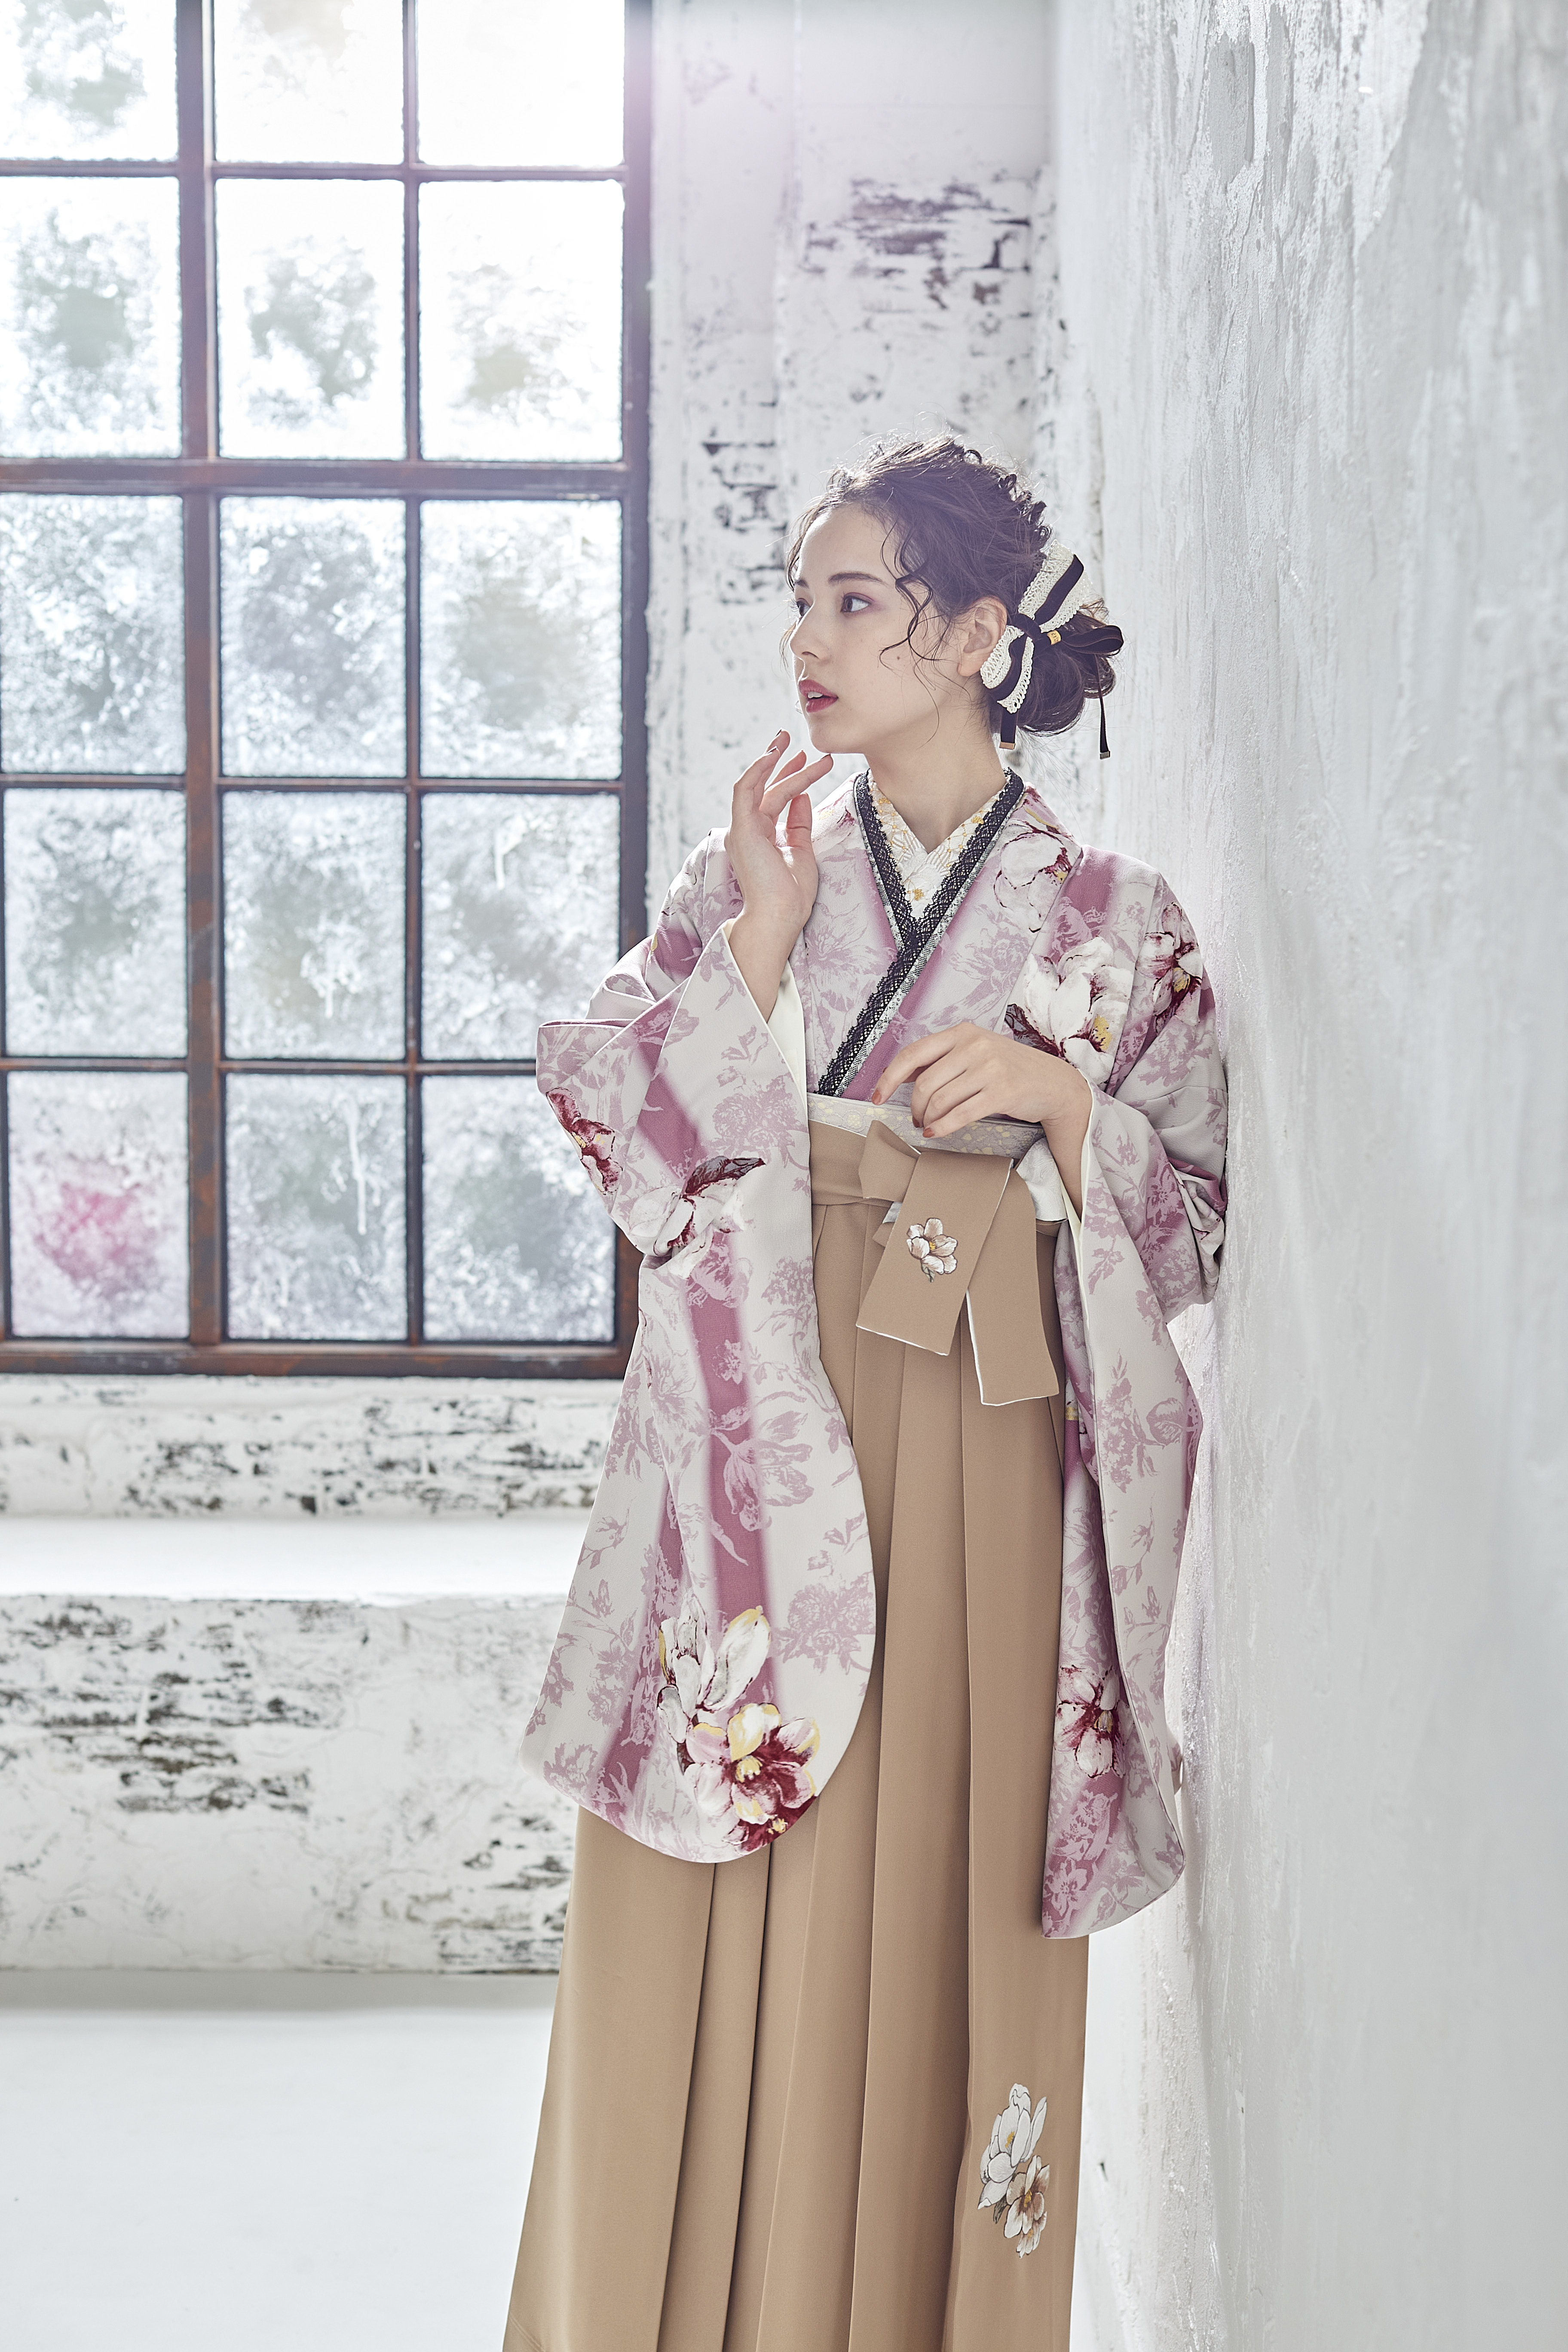 シュガーKブランドの、白地にピンクの花柄の二尺袖と、ベージュの袴の女性用卒業式袴を着用したアップ写真